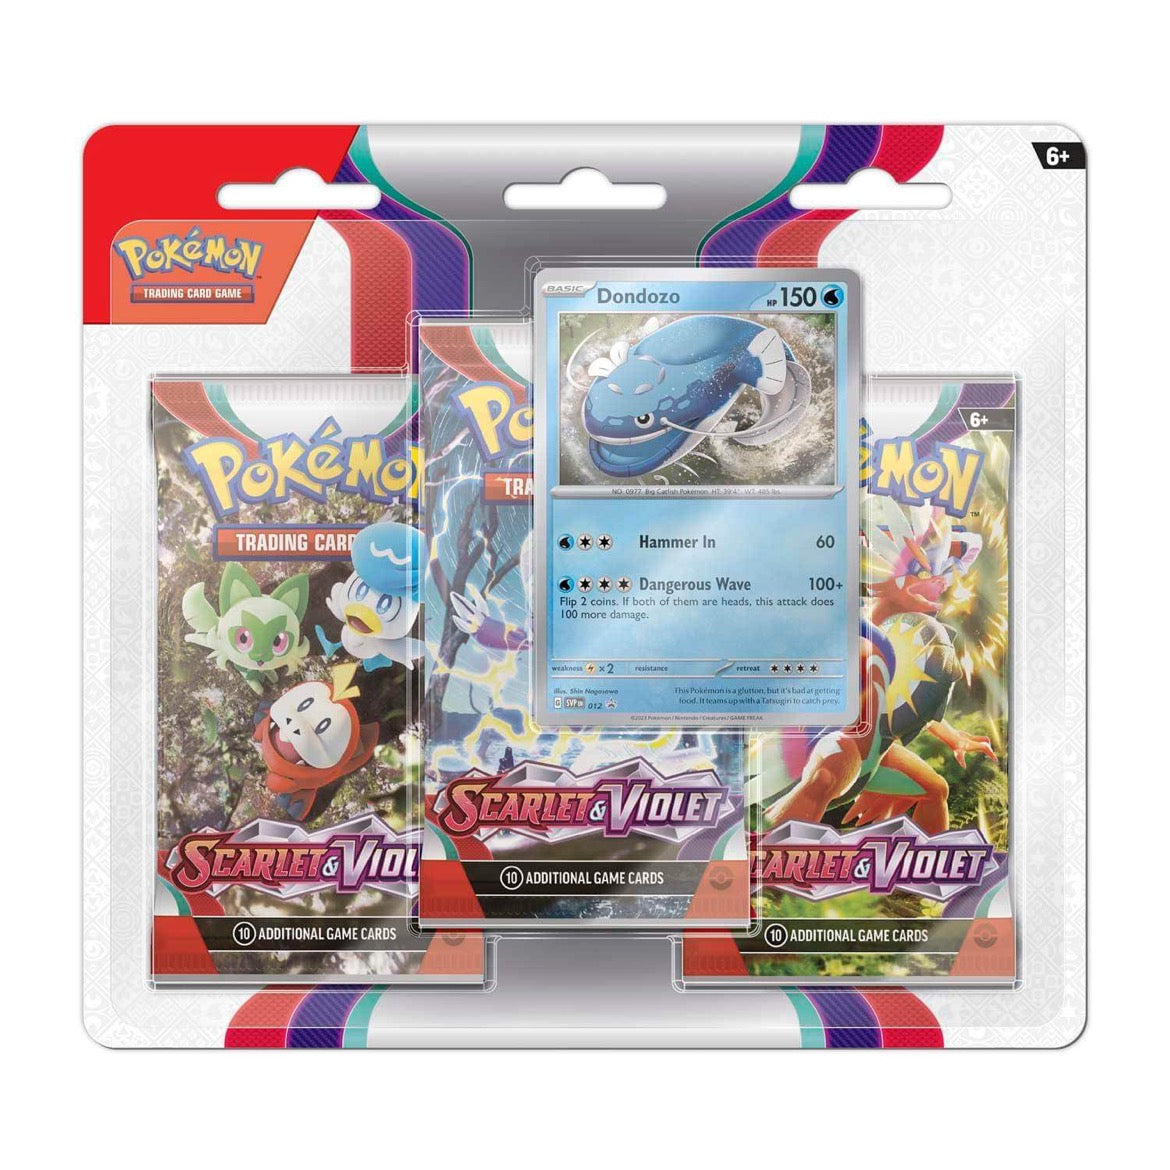 Pokémon Trading Card Game - Scarlet & Violet Base Set SV01 - 3 Pack Blister - Dondozo | Viridian Forest